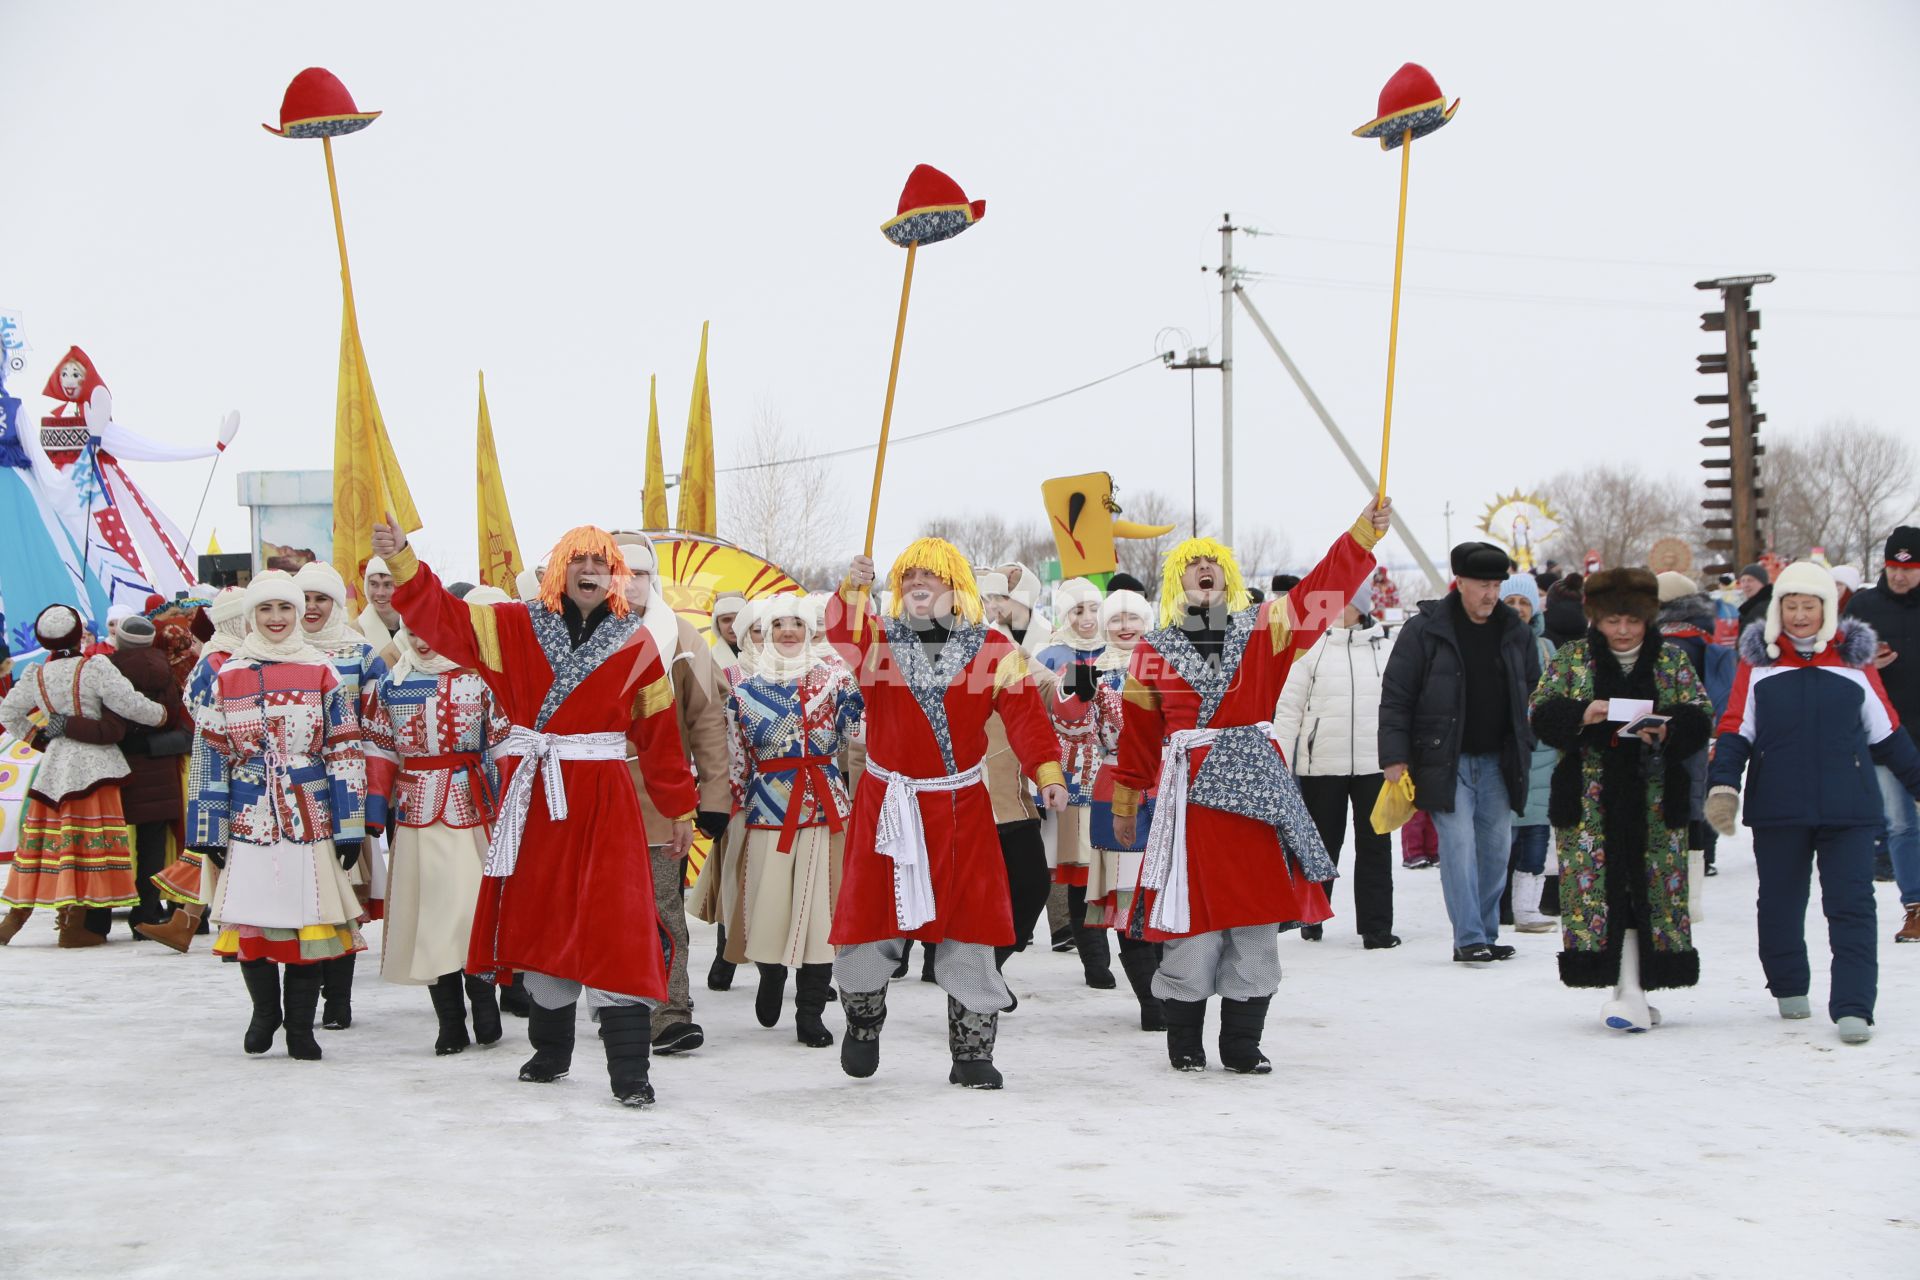 Барнаул. Участники театрализованного масленичного шествия  во время фестиваля `Сибирсквая масленица`.